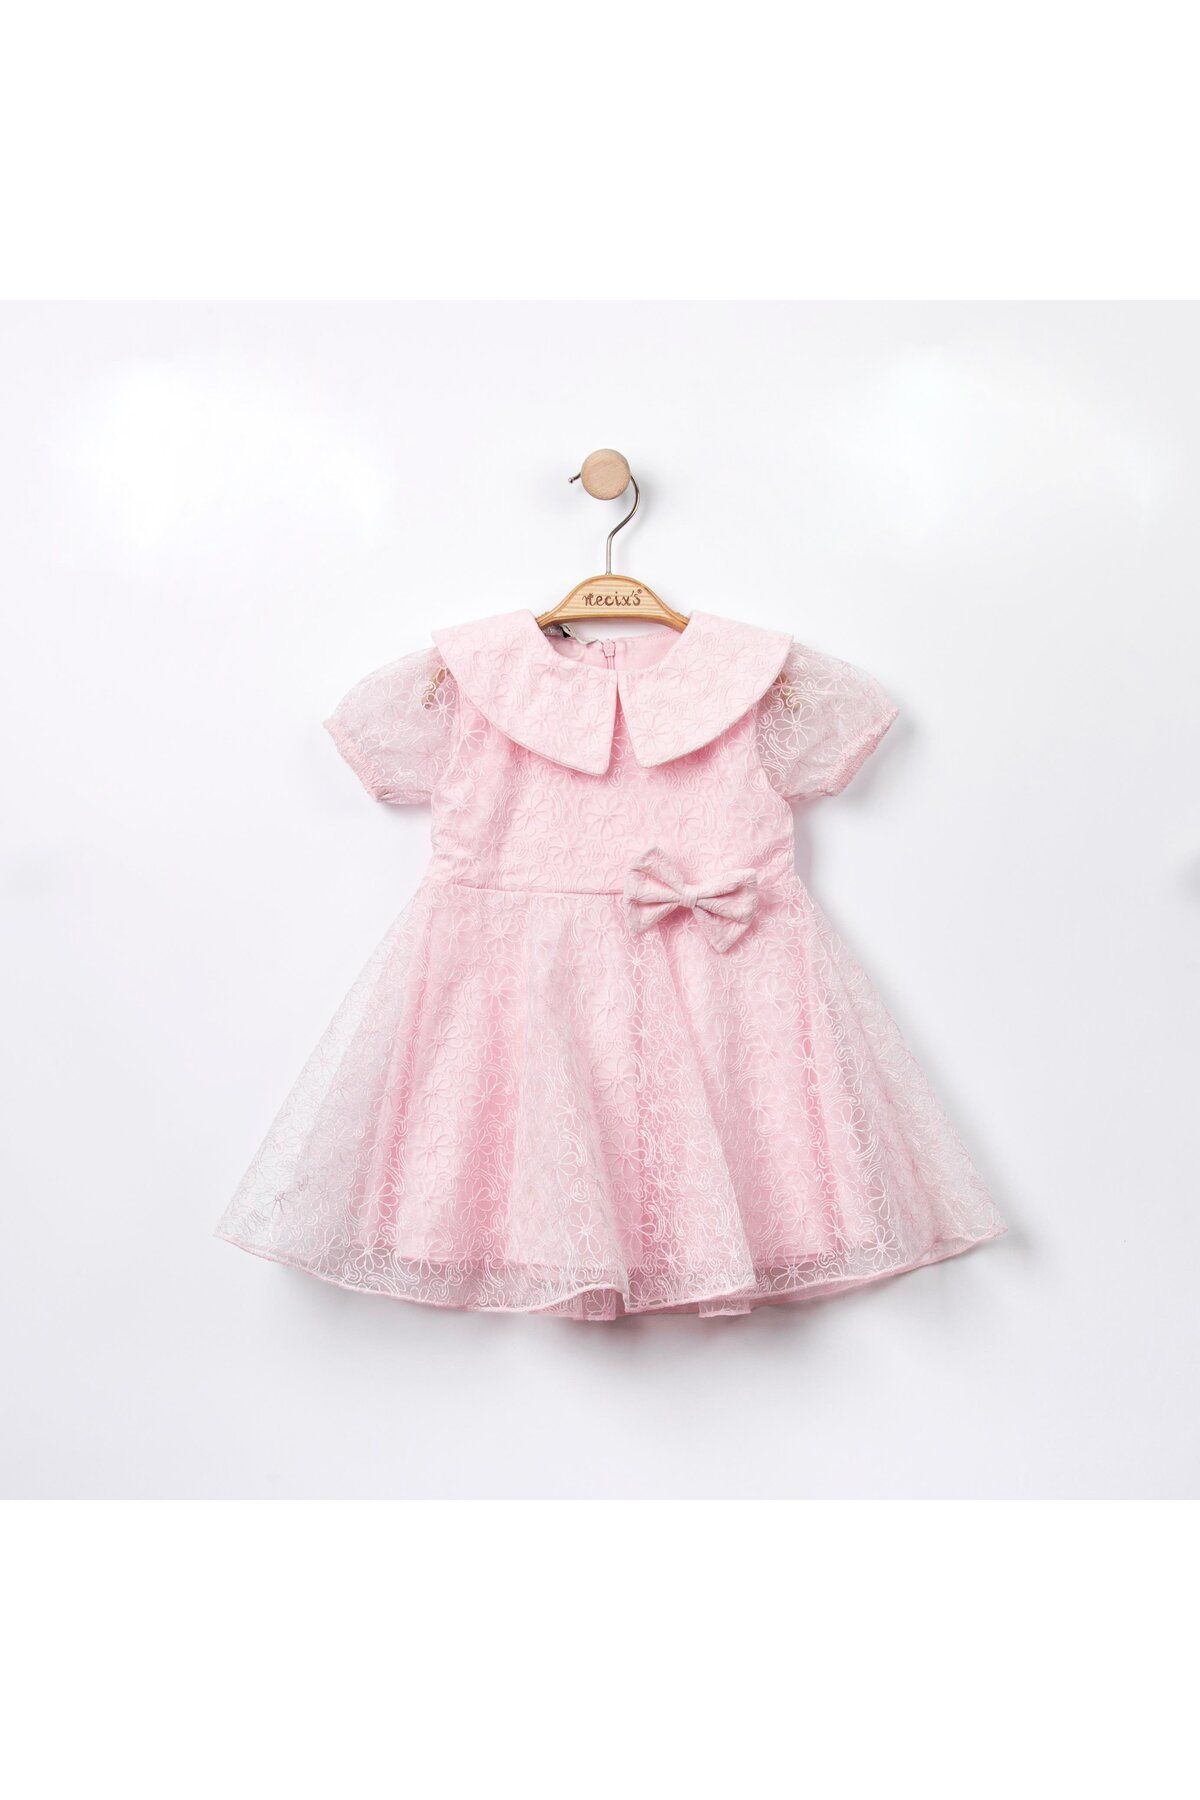 Necix's Kız Bebek Tüllü Doğumgünü Özel Gün Elbisesi